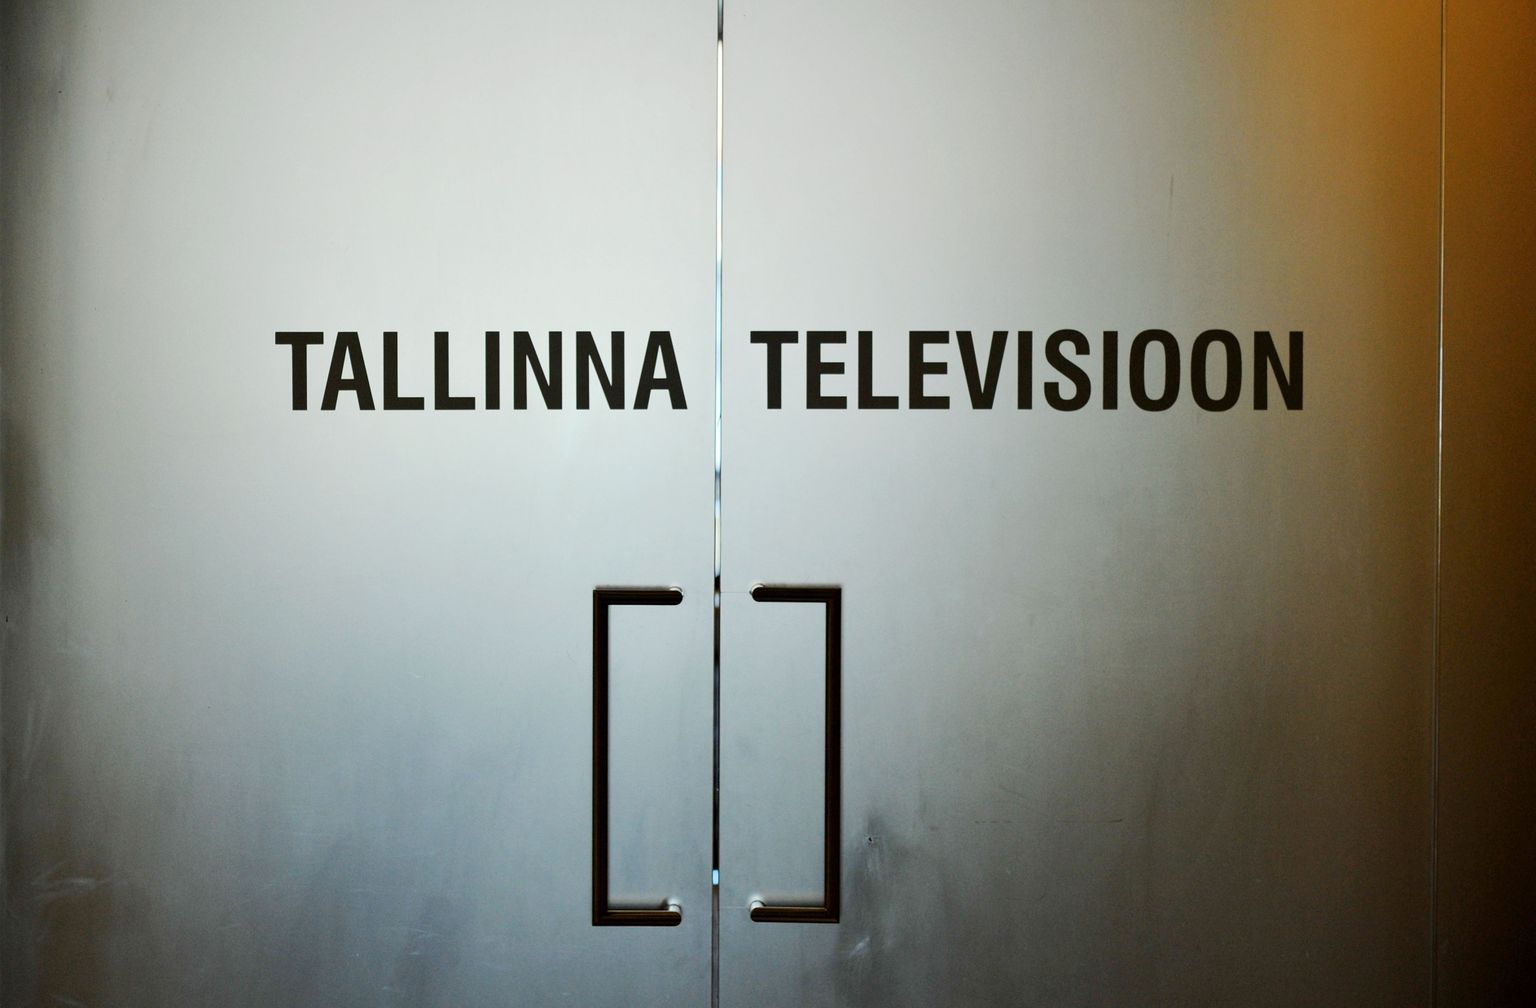 Tallinna televisiooni uks.